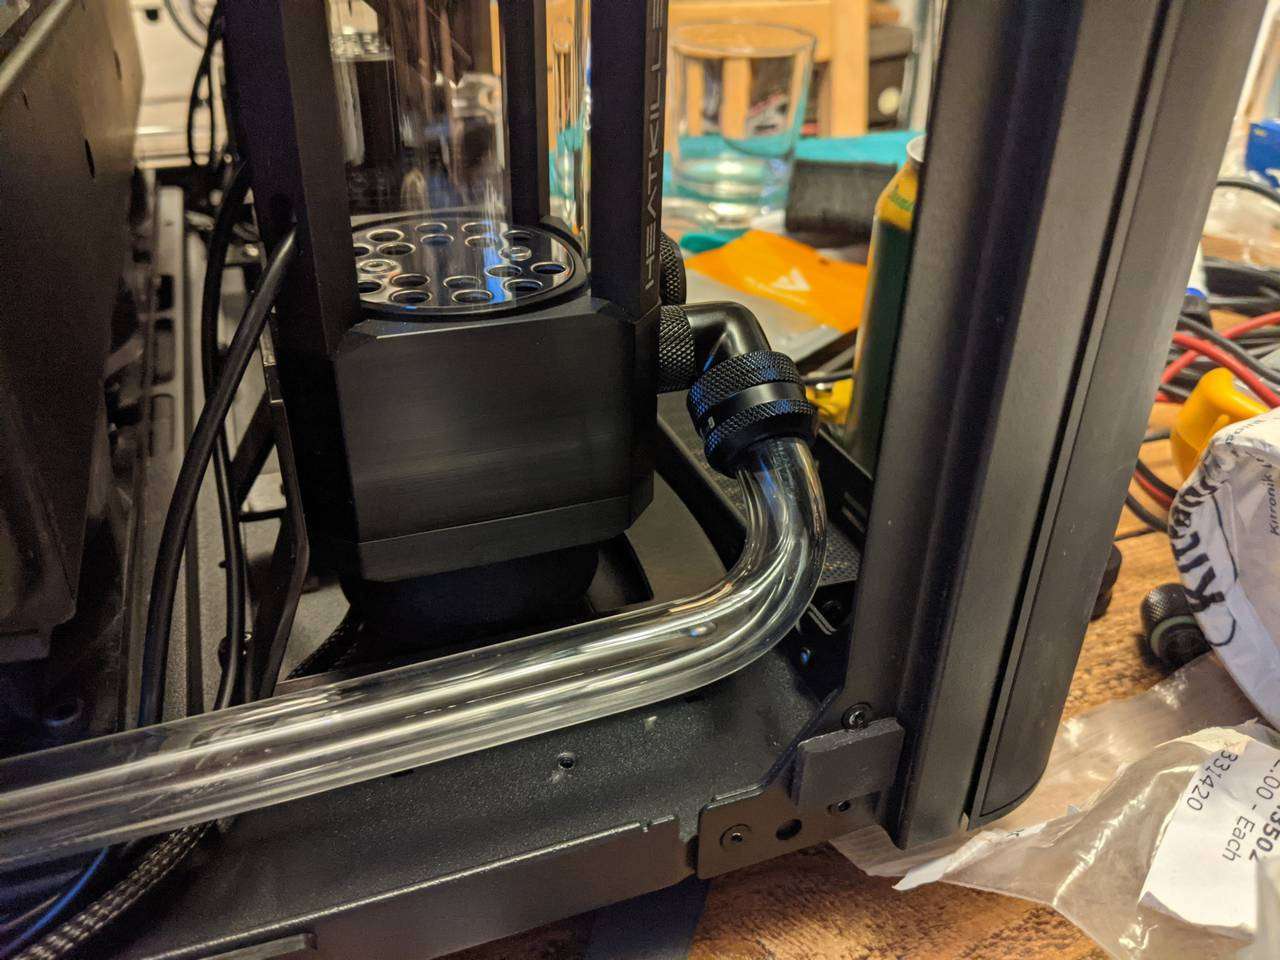 GPU loop pump-reservoir outlet connected